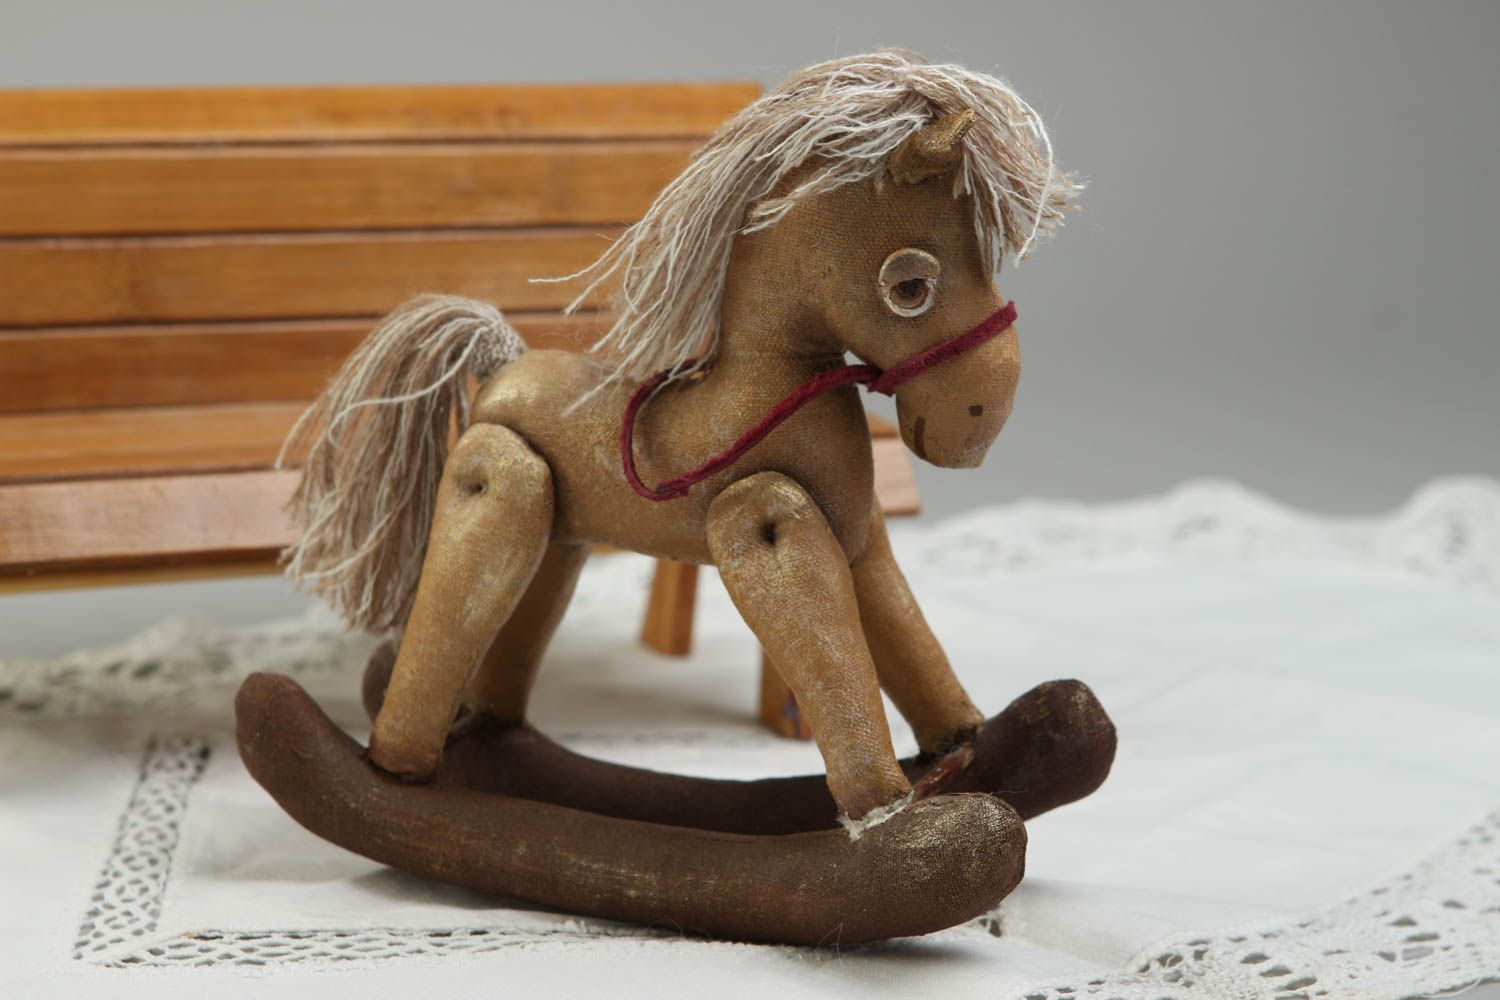 Игрушка ручной работы мягкая игрушка лошадка качалка из ткани авторская игрушка фото 1